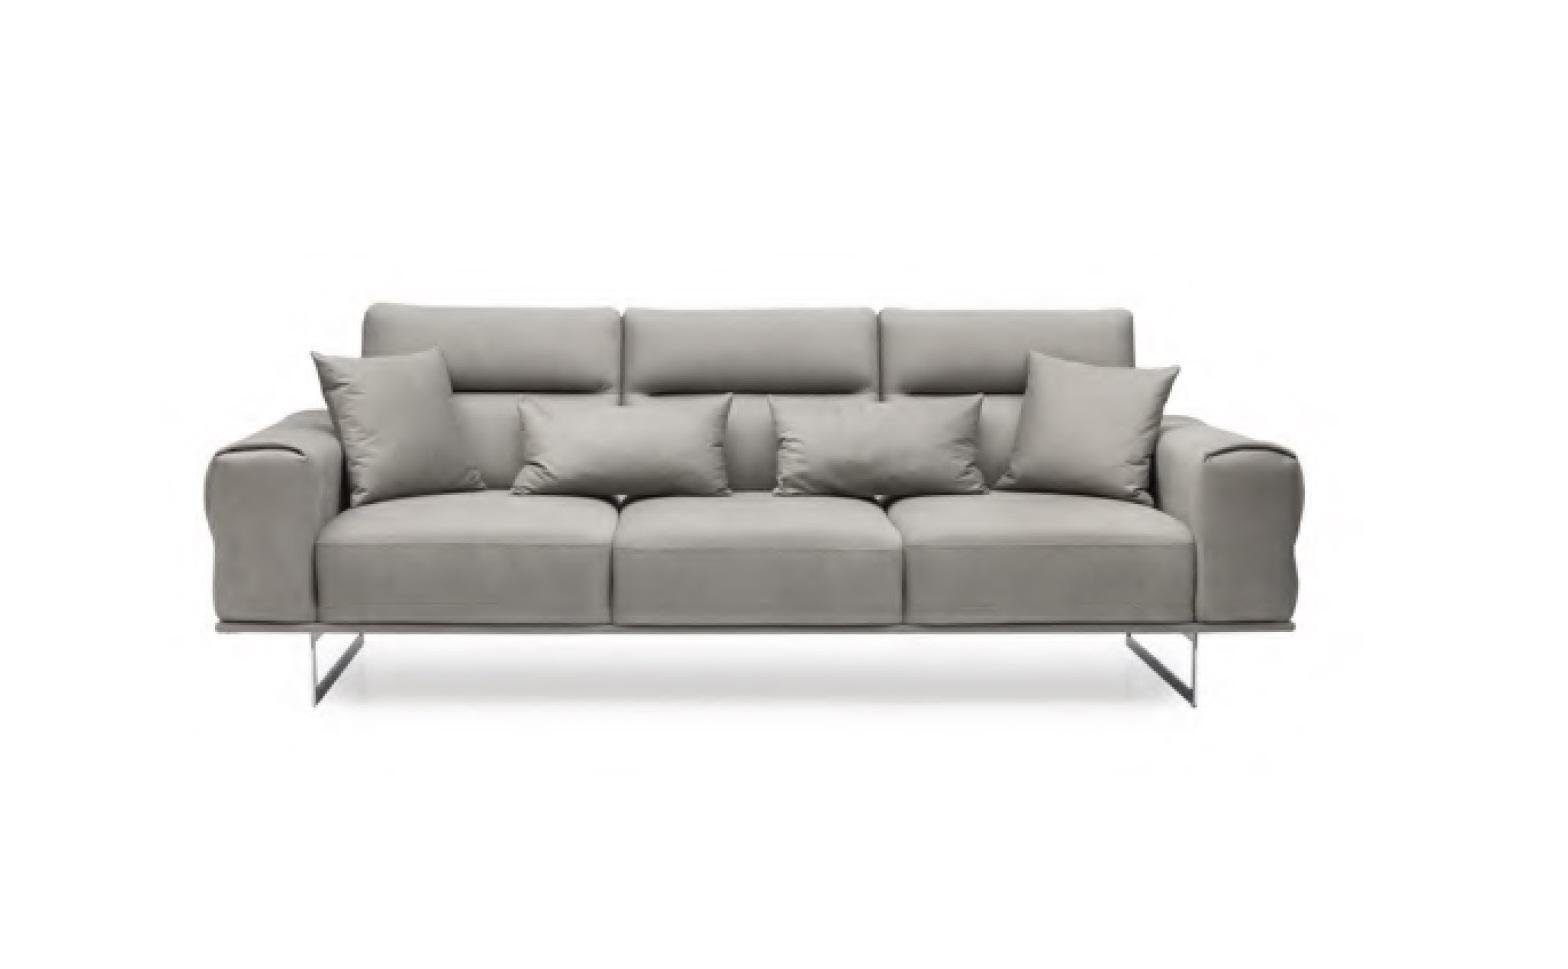 JVmoebel 3-Sitzer Gemütliche Wohnzimmer Couch 254cm Sofa Couchen Sofas Stoffsofa, 1 Teile, Made in Europa